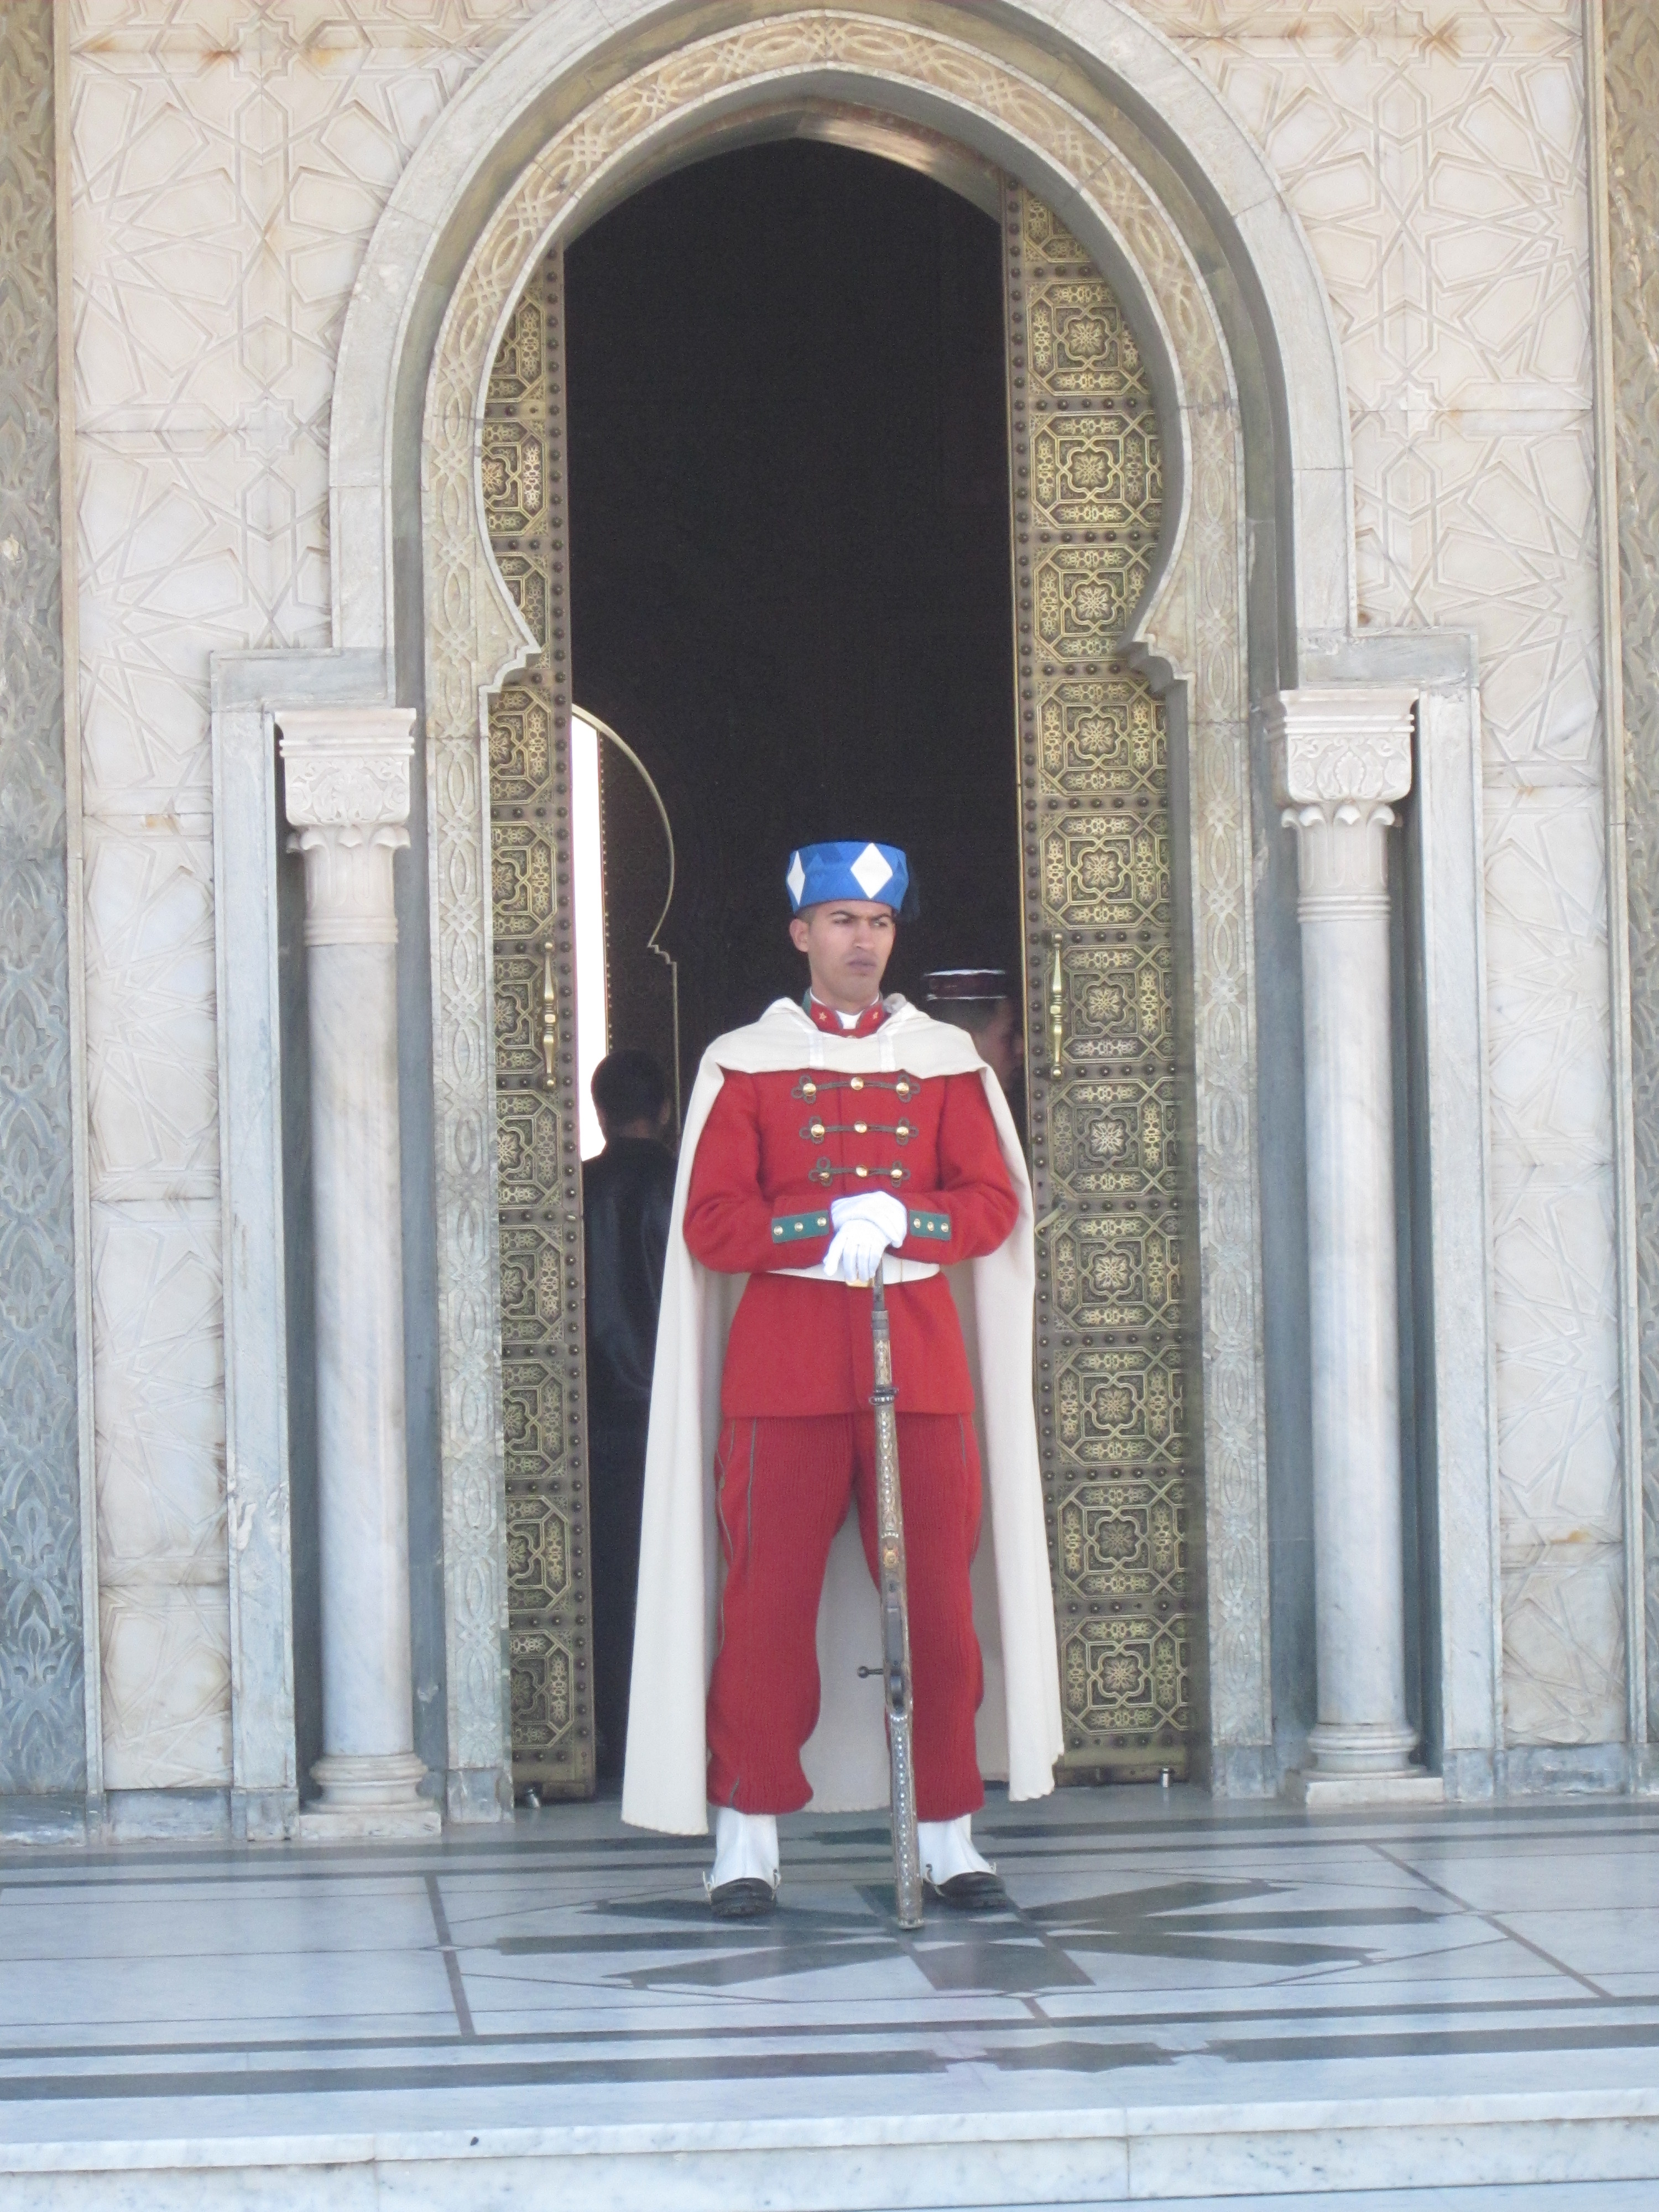 الحرس الملكي المغربي ويكيبيديا